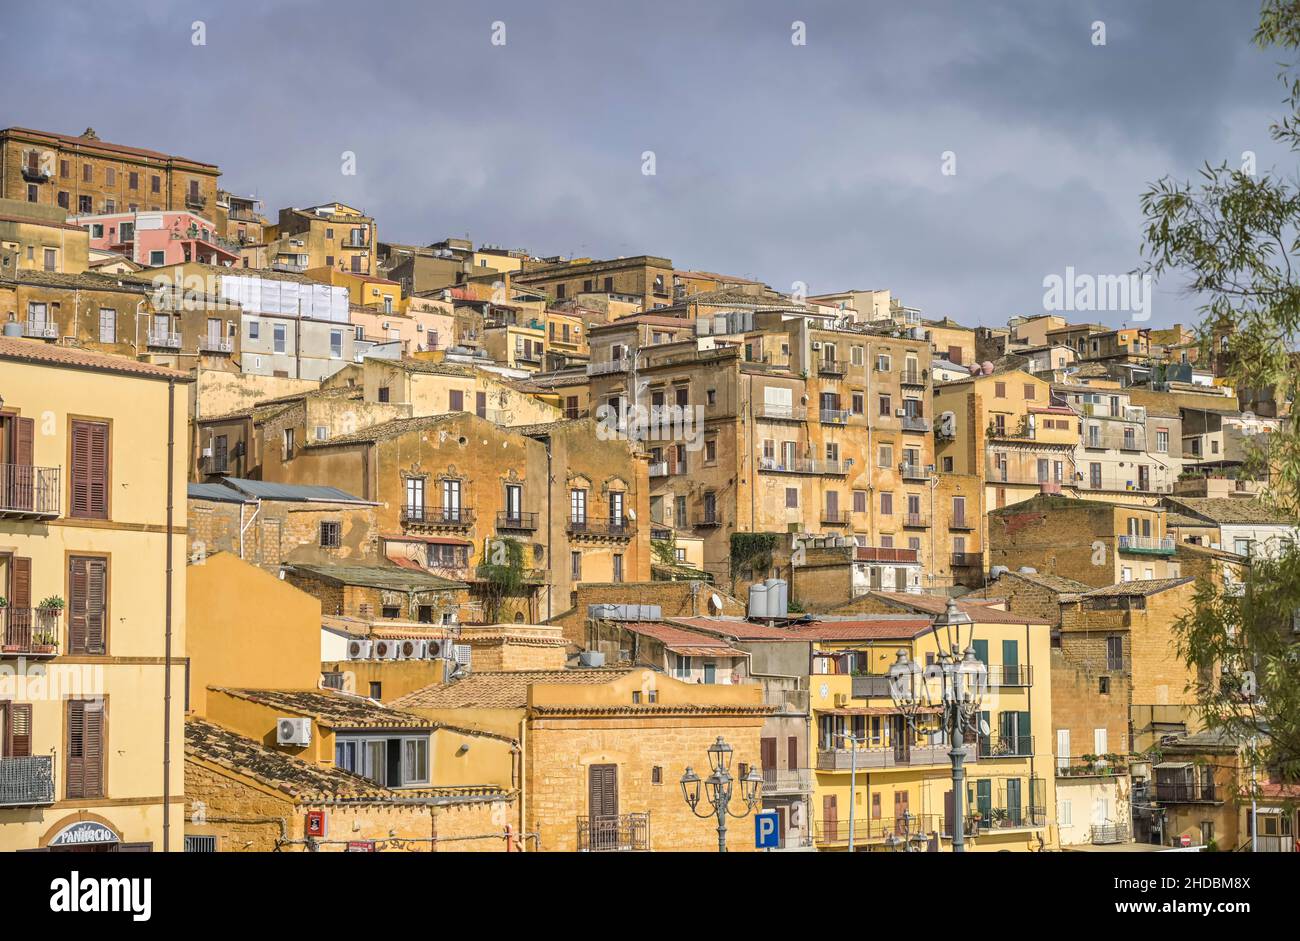 Wohnhäuser, Altstadt, Agrigent, Sizilien, Italien Foto Stock